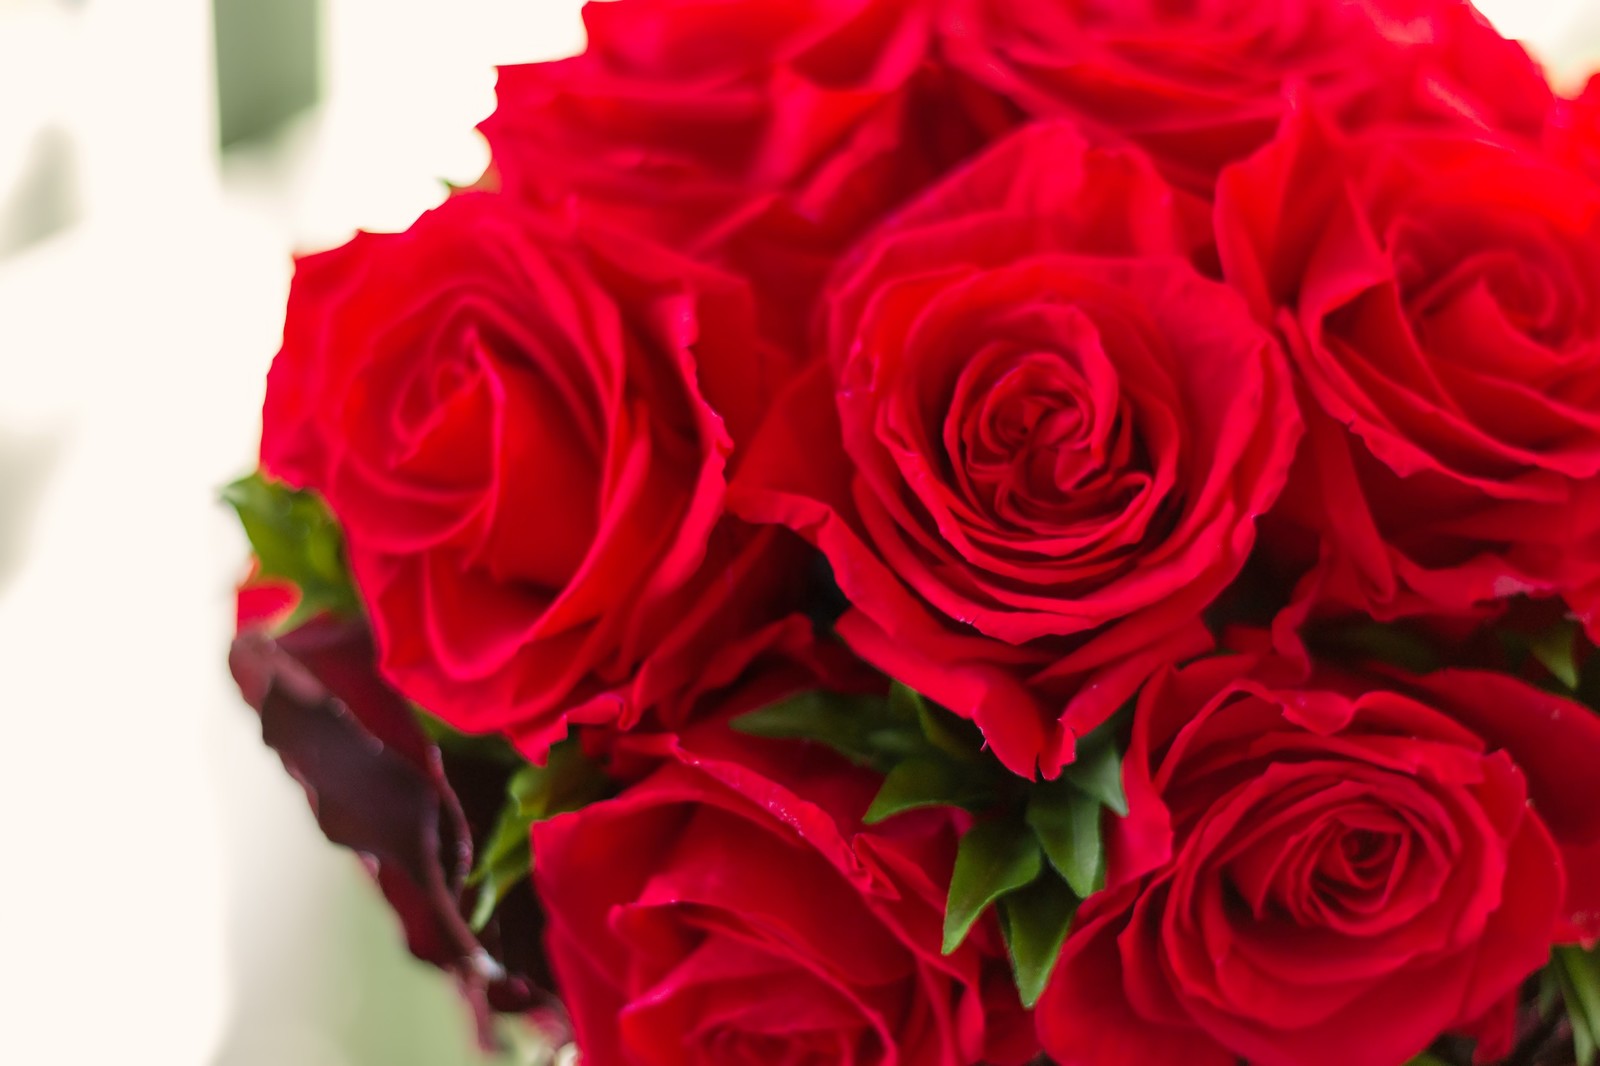 ロマンチックな真っ赤なバラの花束には「愛しています」のキモチを込めて